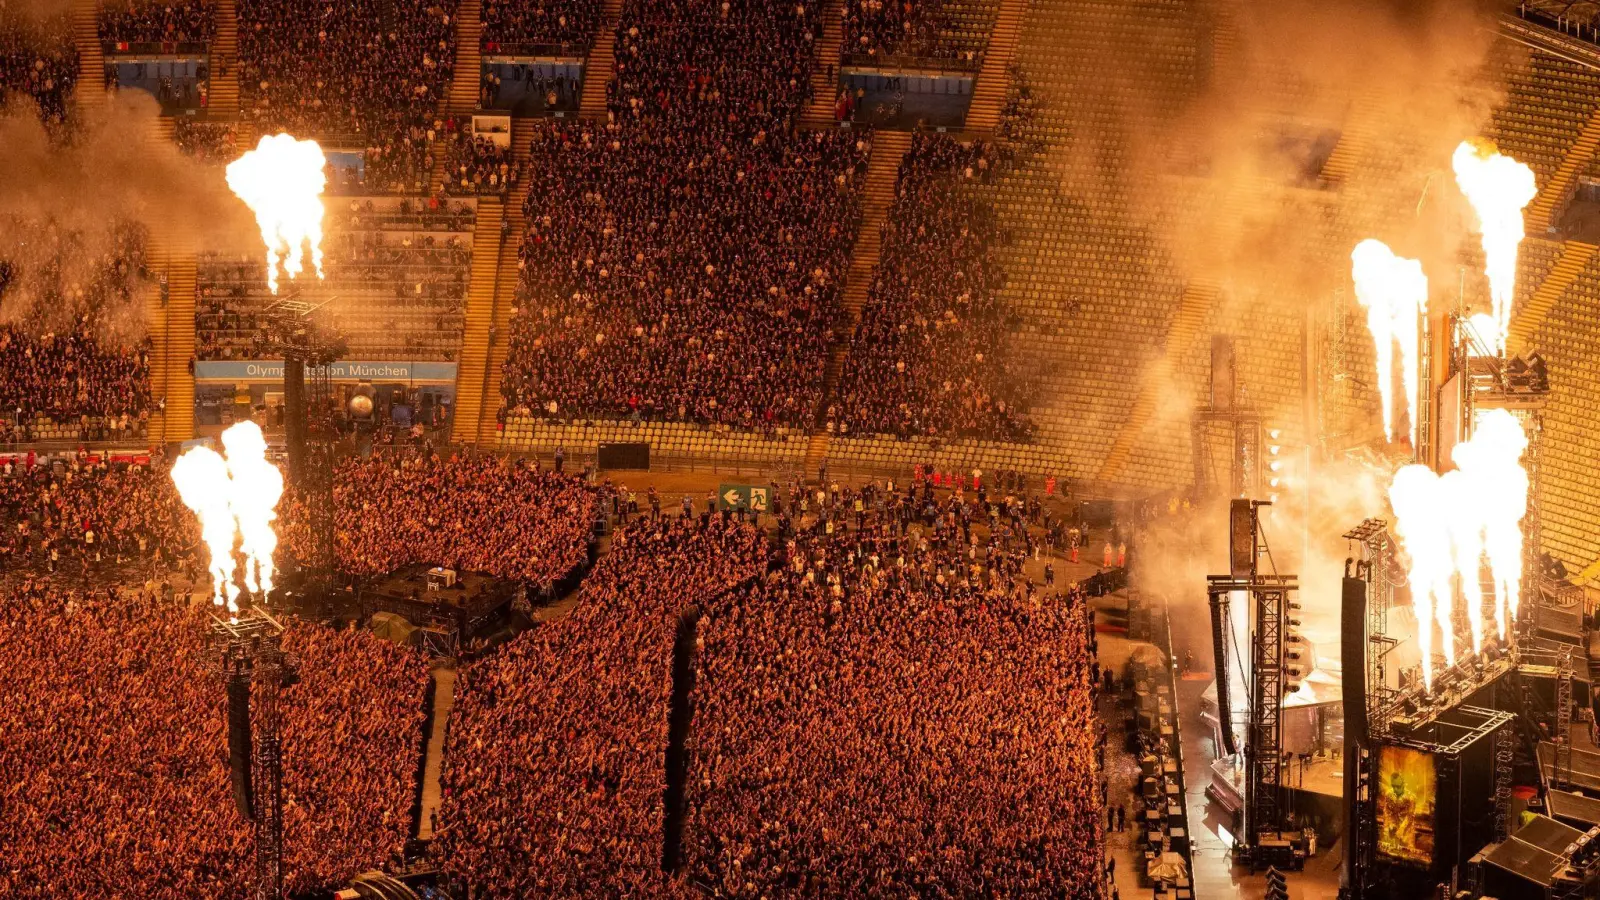 Tausende von Zuschauern beim Rammstein-Konzert im Münchner Olympiastadion. (Foto: Sven Hoppe/dpa)